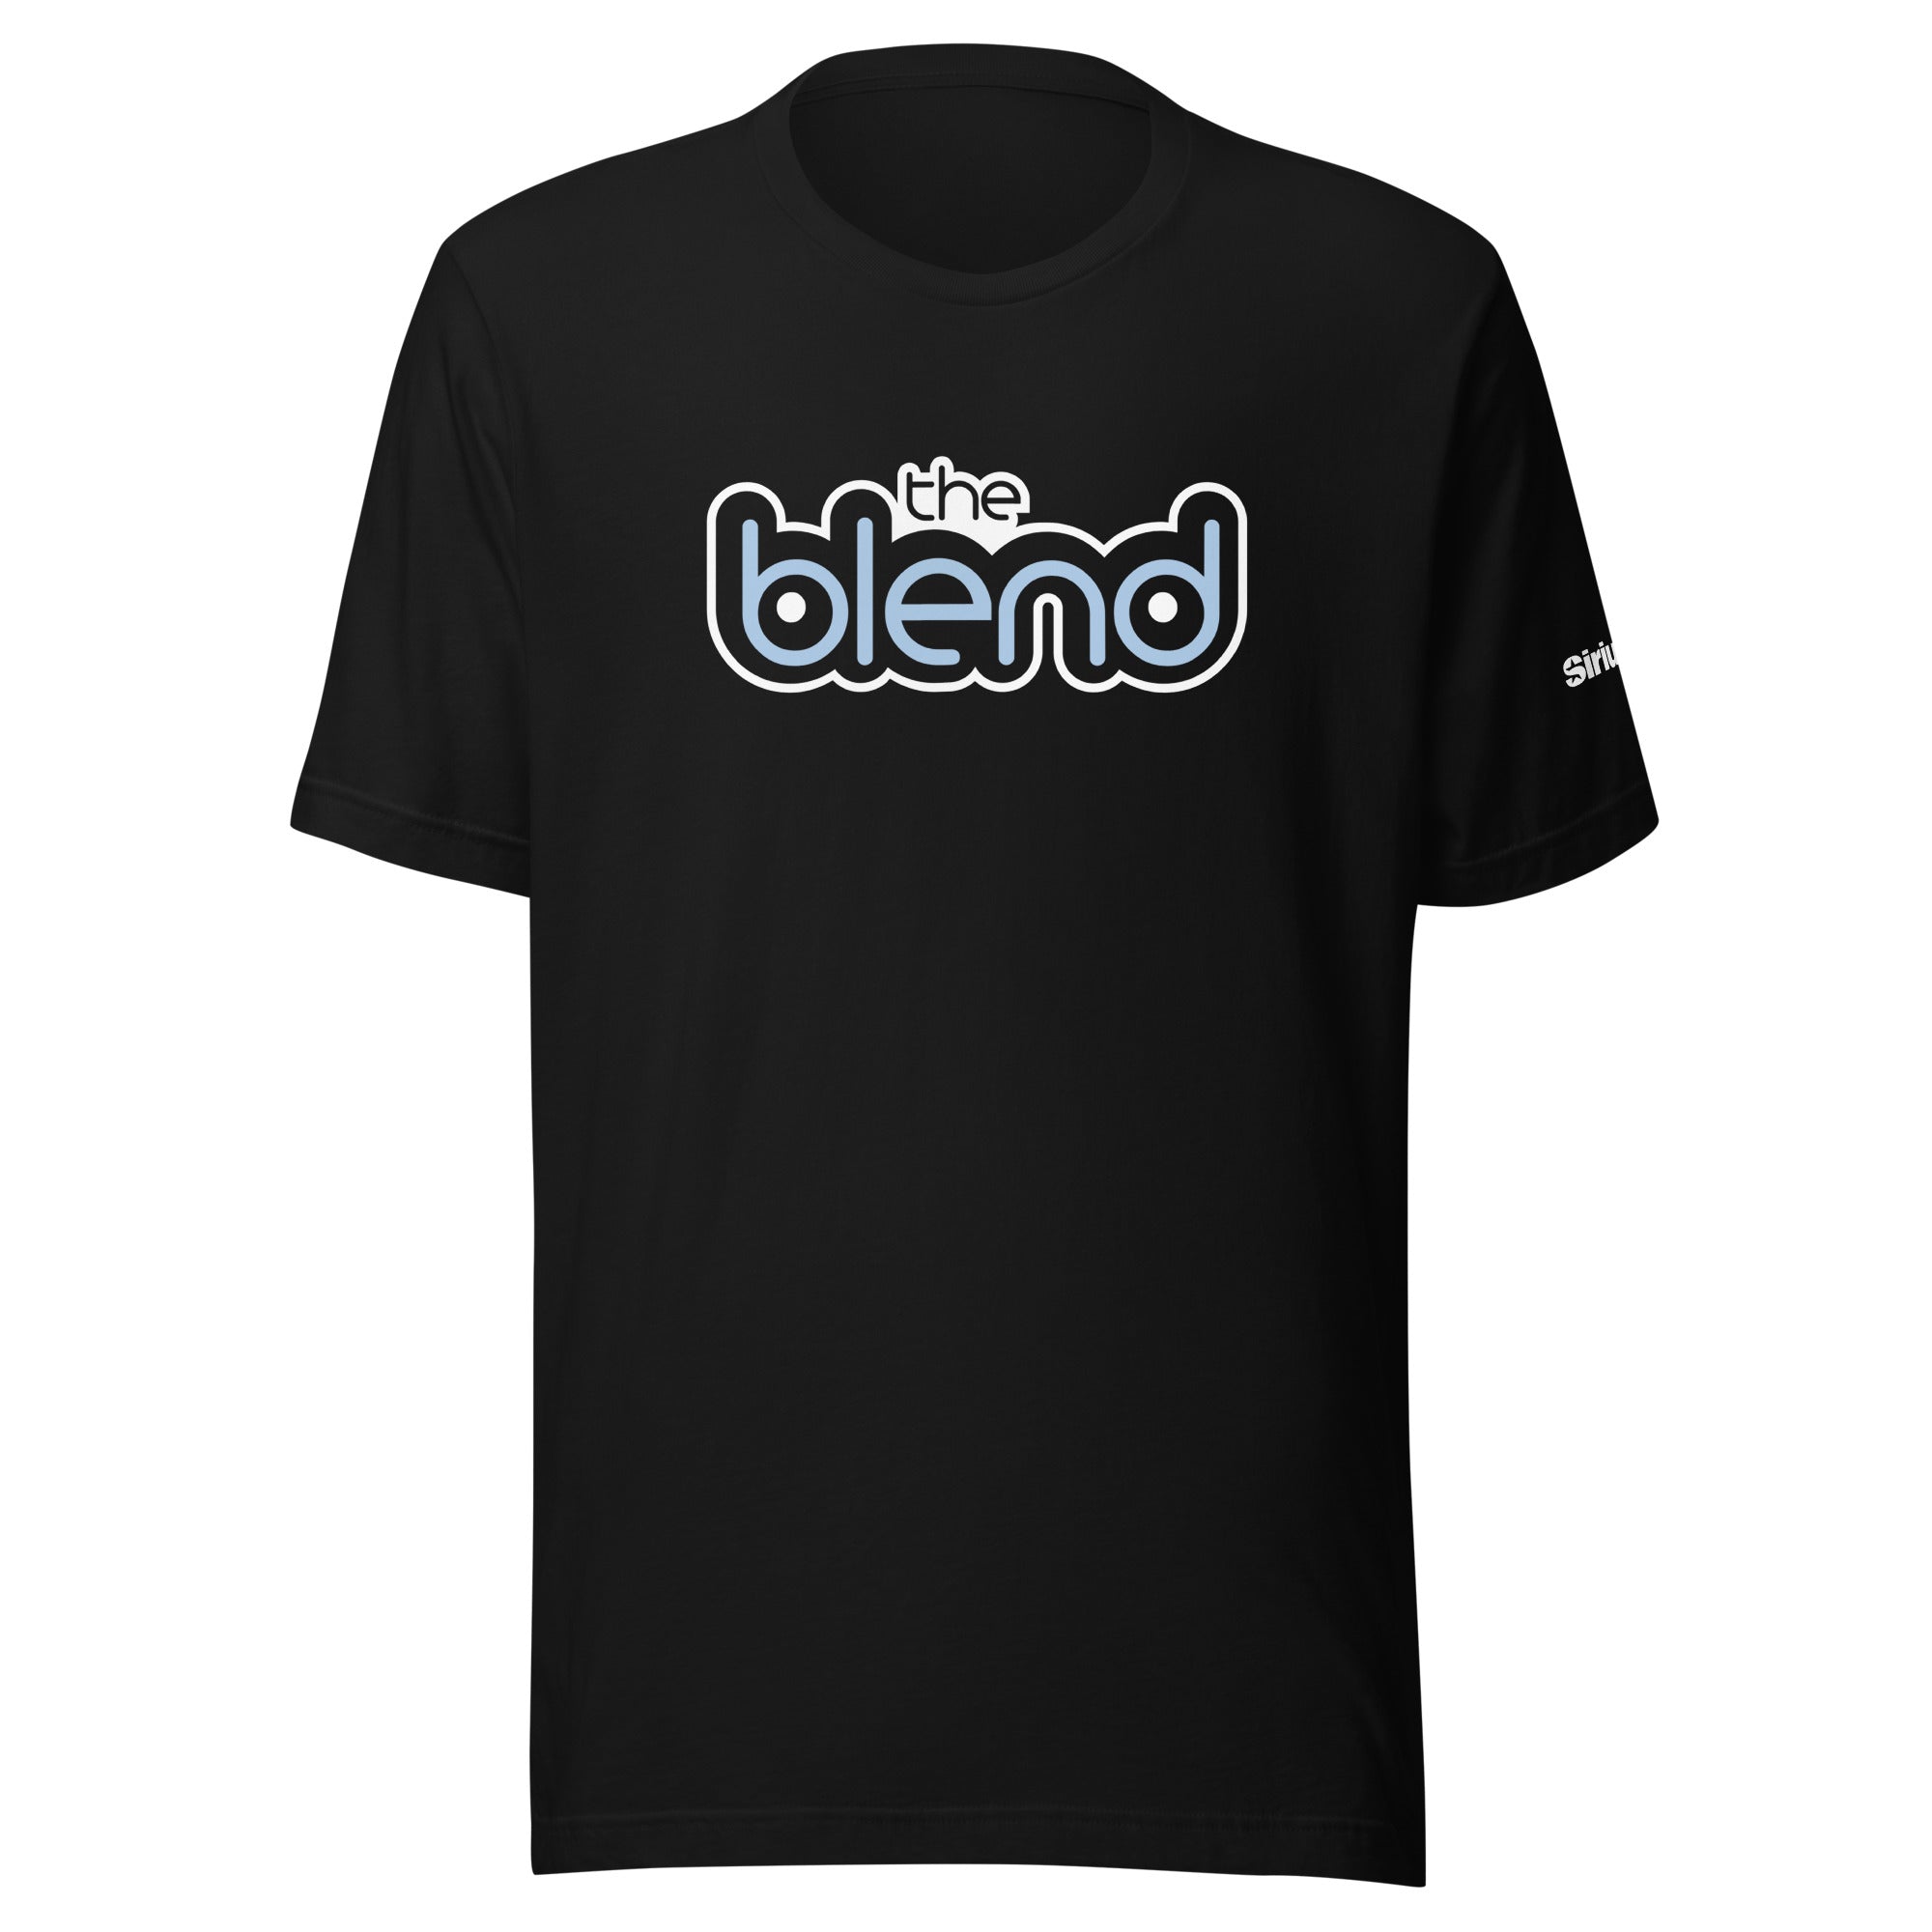 The Blend: T-shirt (Black)